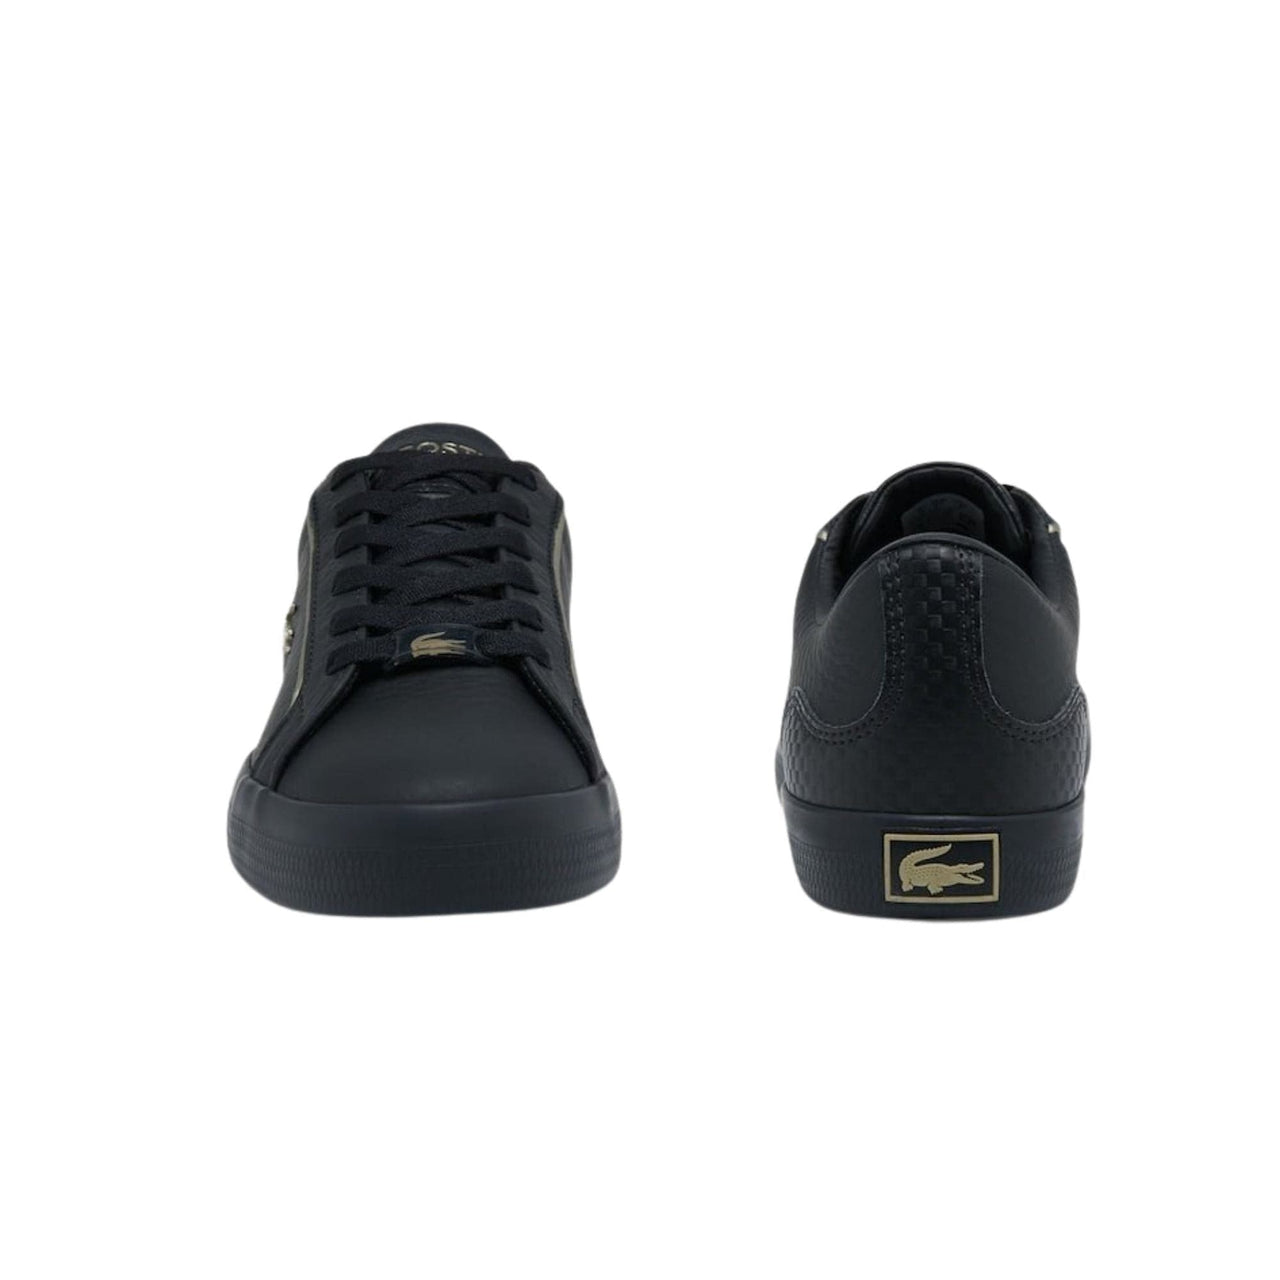 Zapatillas Lacoste Mujer Lerond | Comprar Online en Much Sneakers®